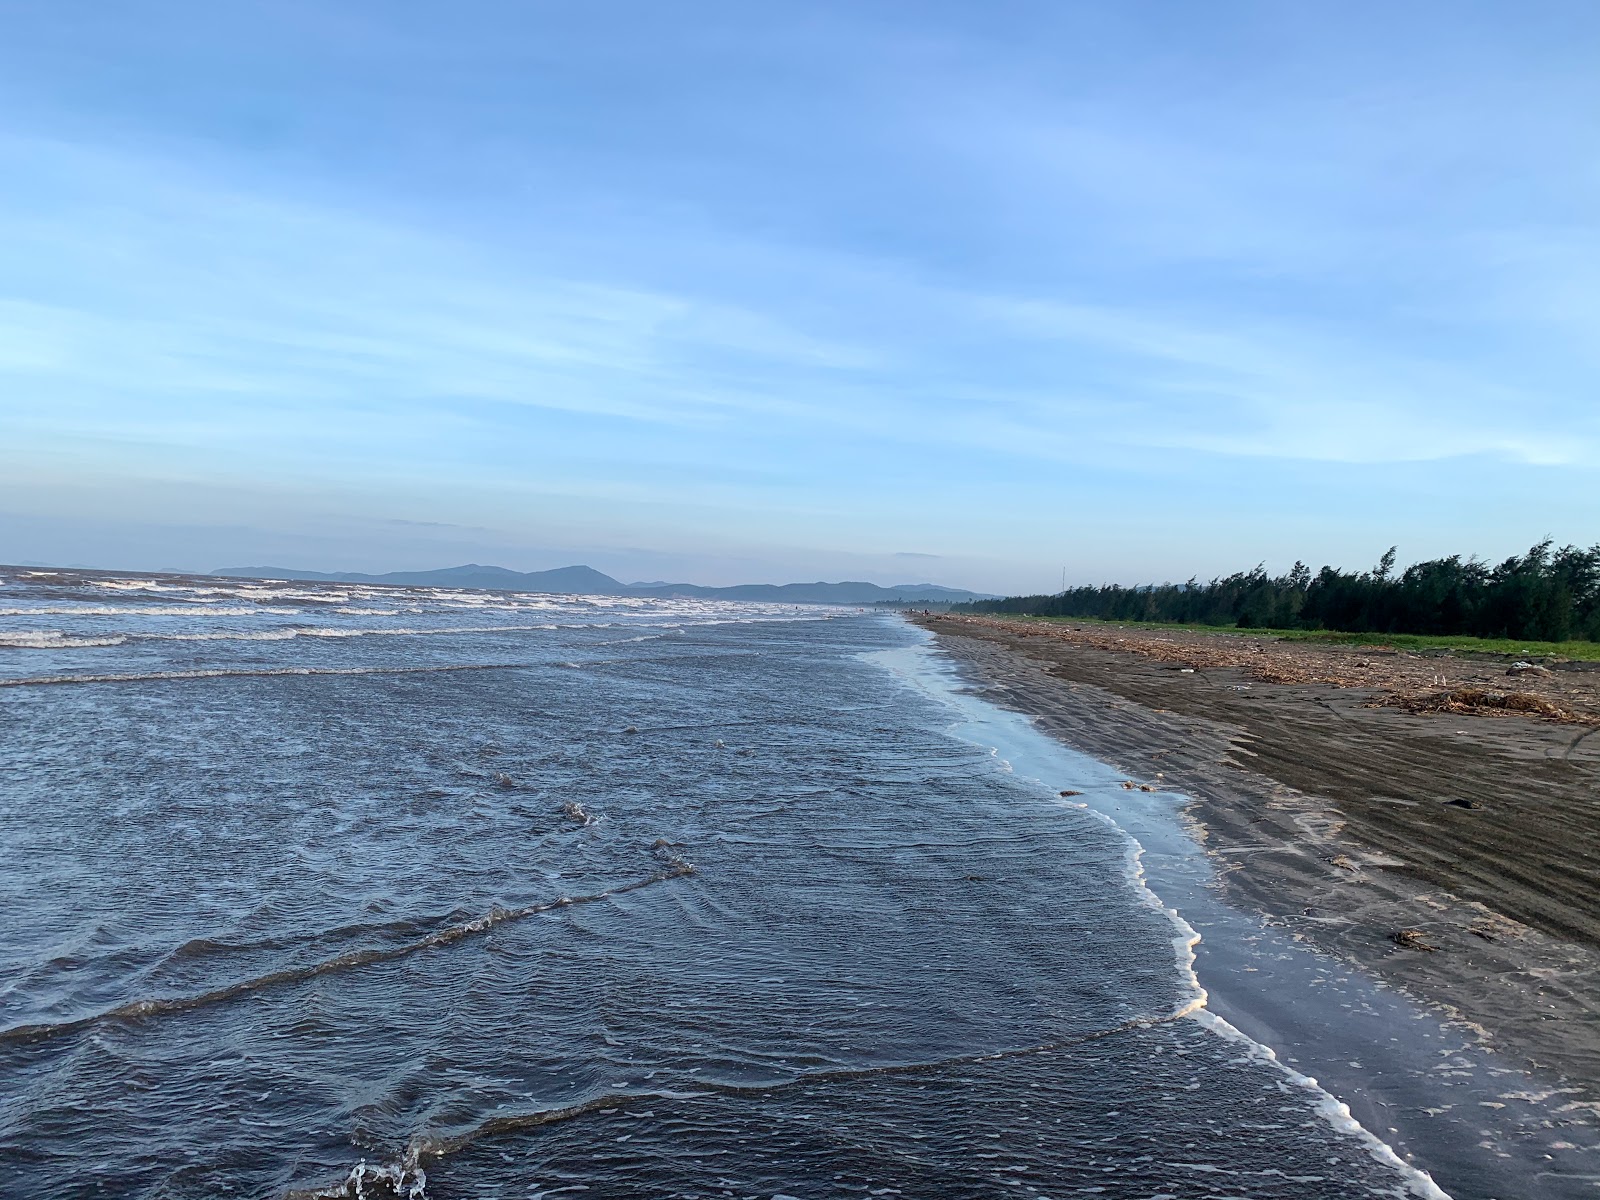 Foto av Dien Thanh Beach med brunsand yta